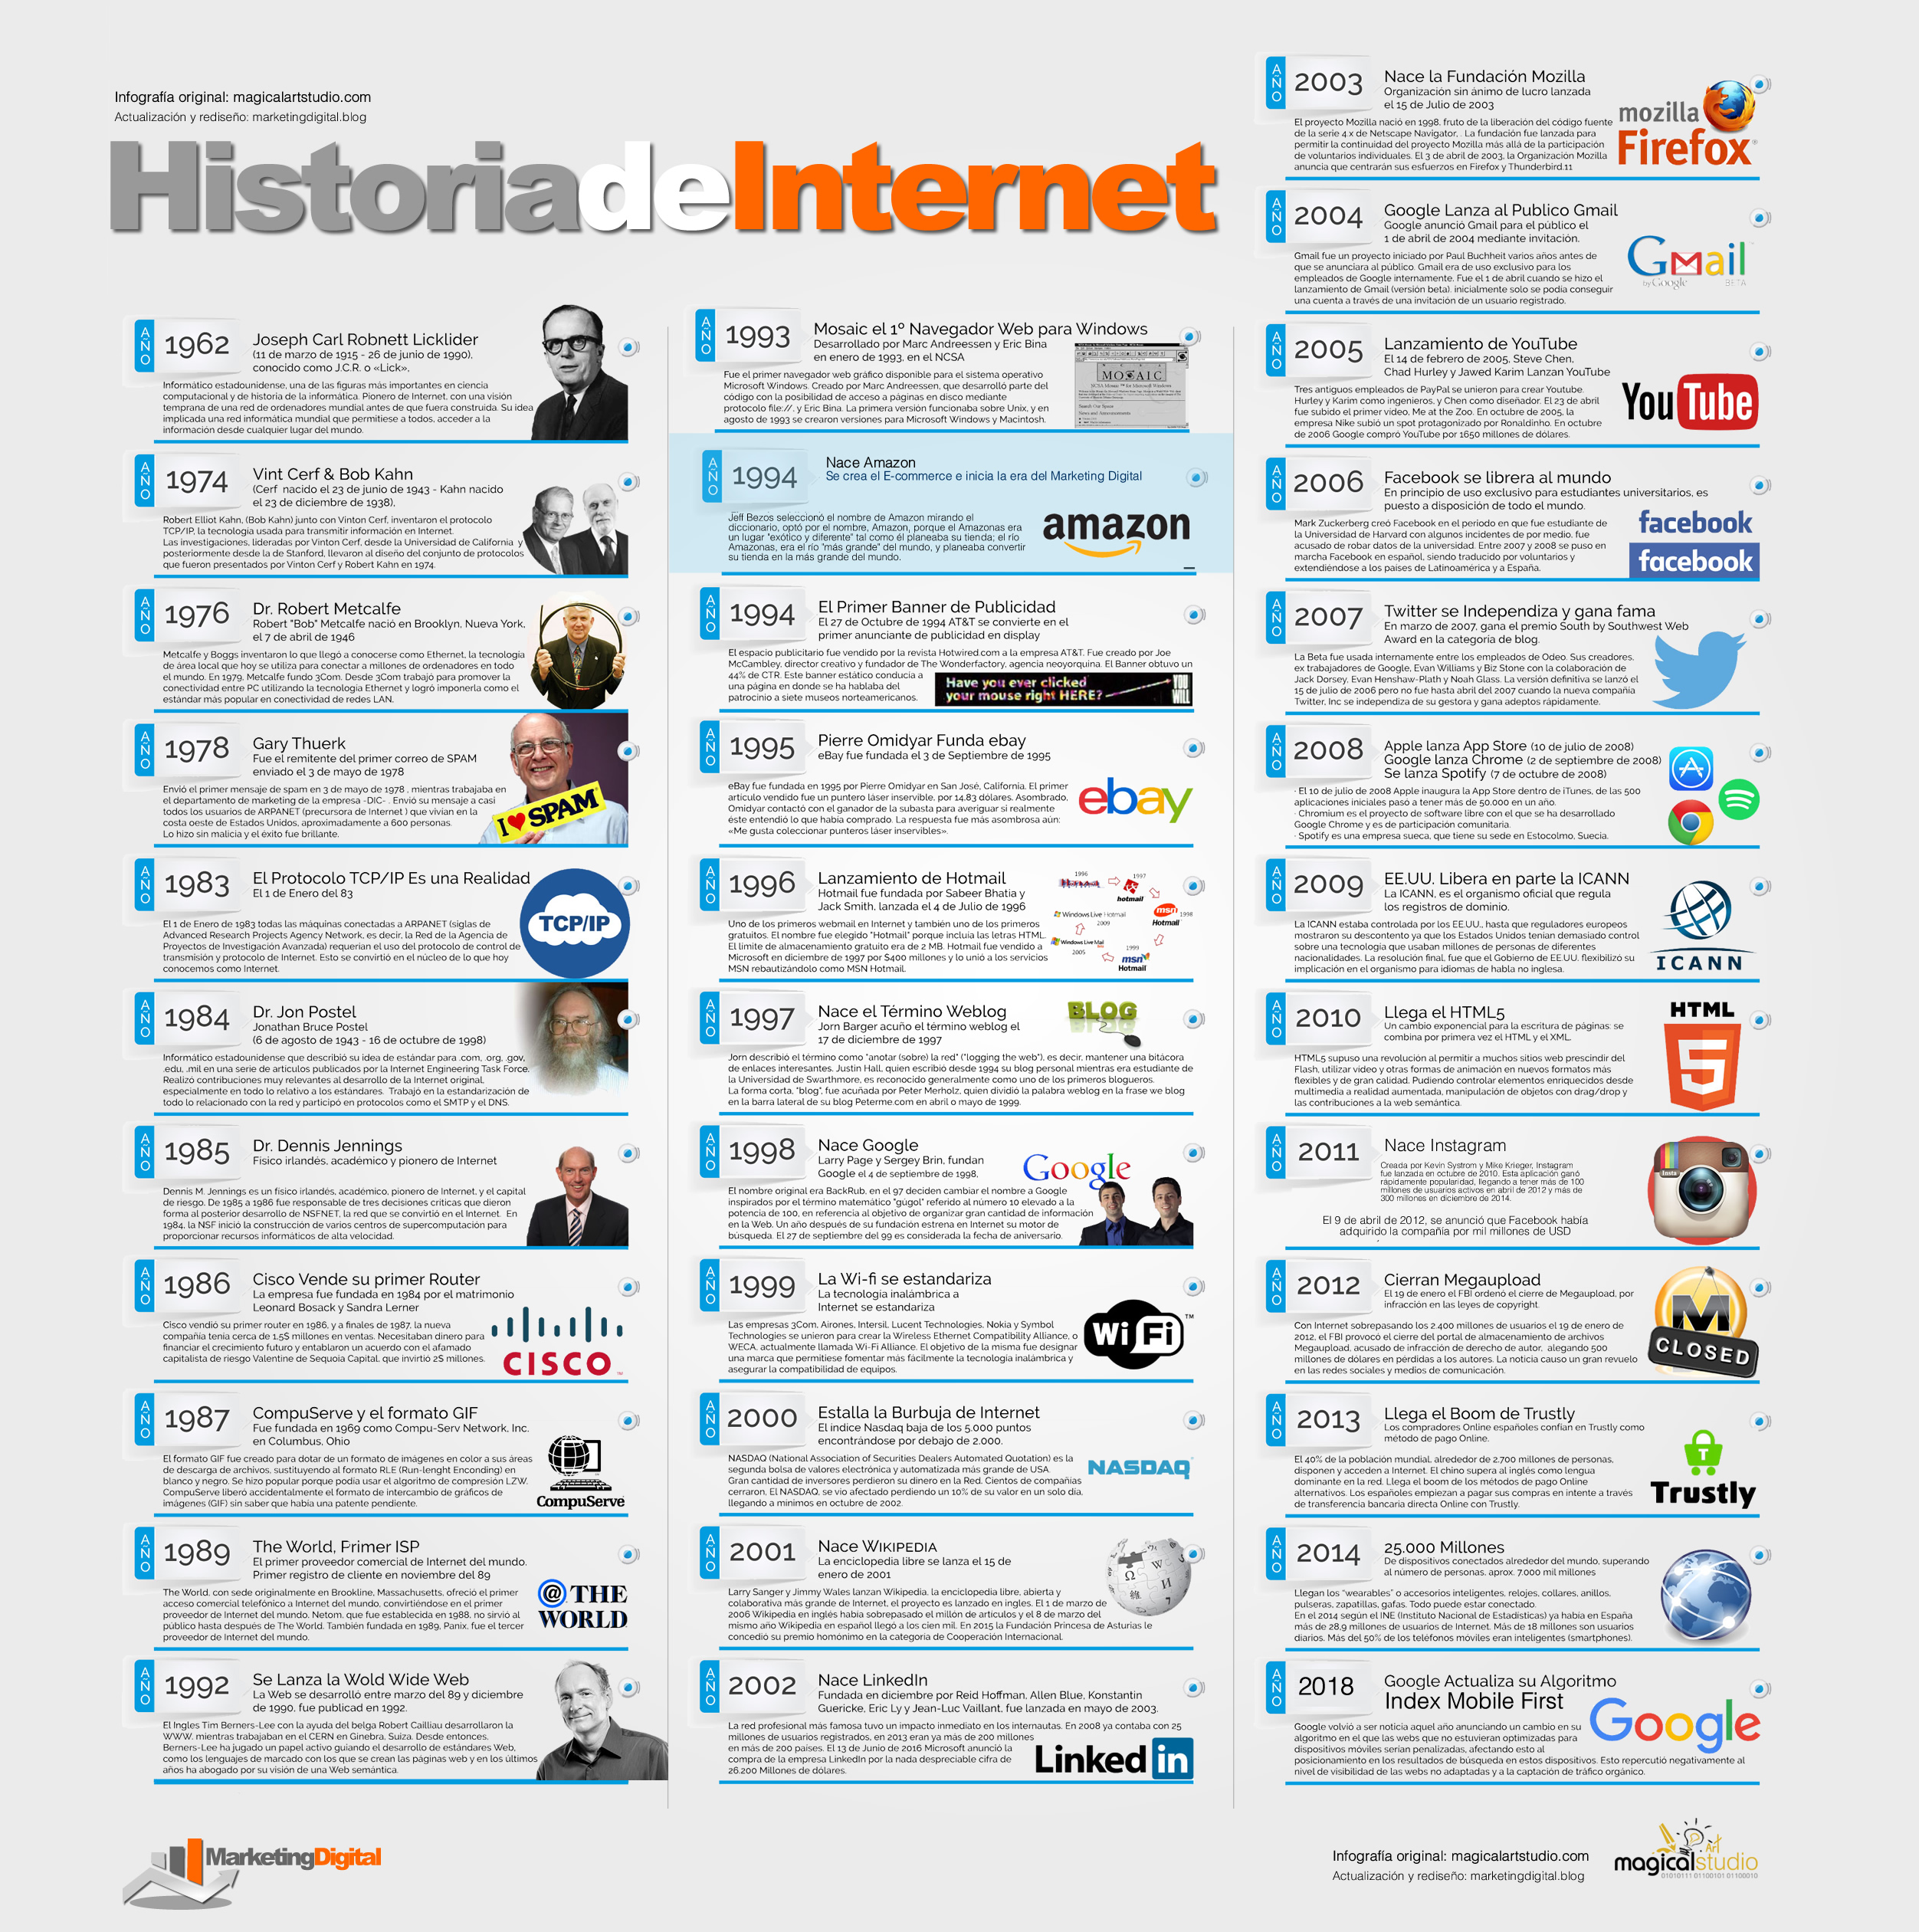 La historia de Internet y el Marketing Digital